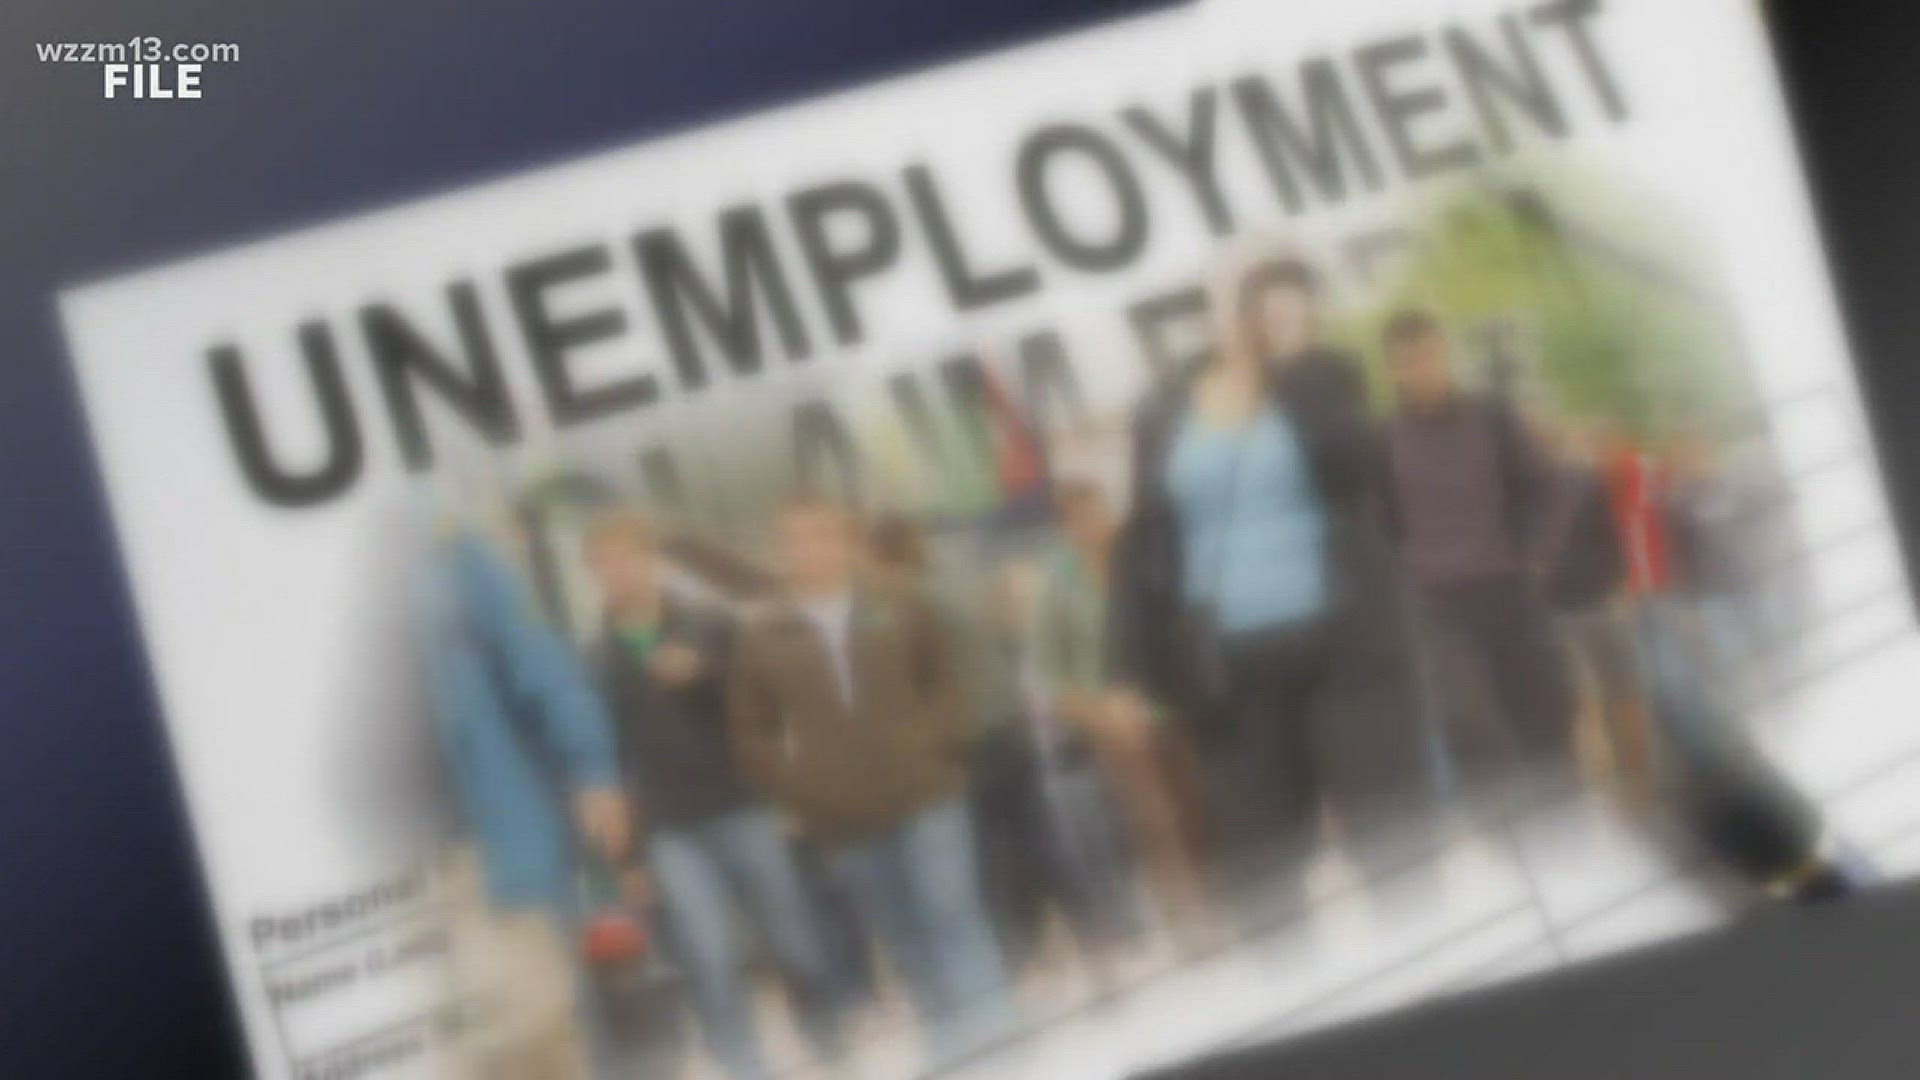 Unemployment fiasco prevention passes